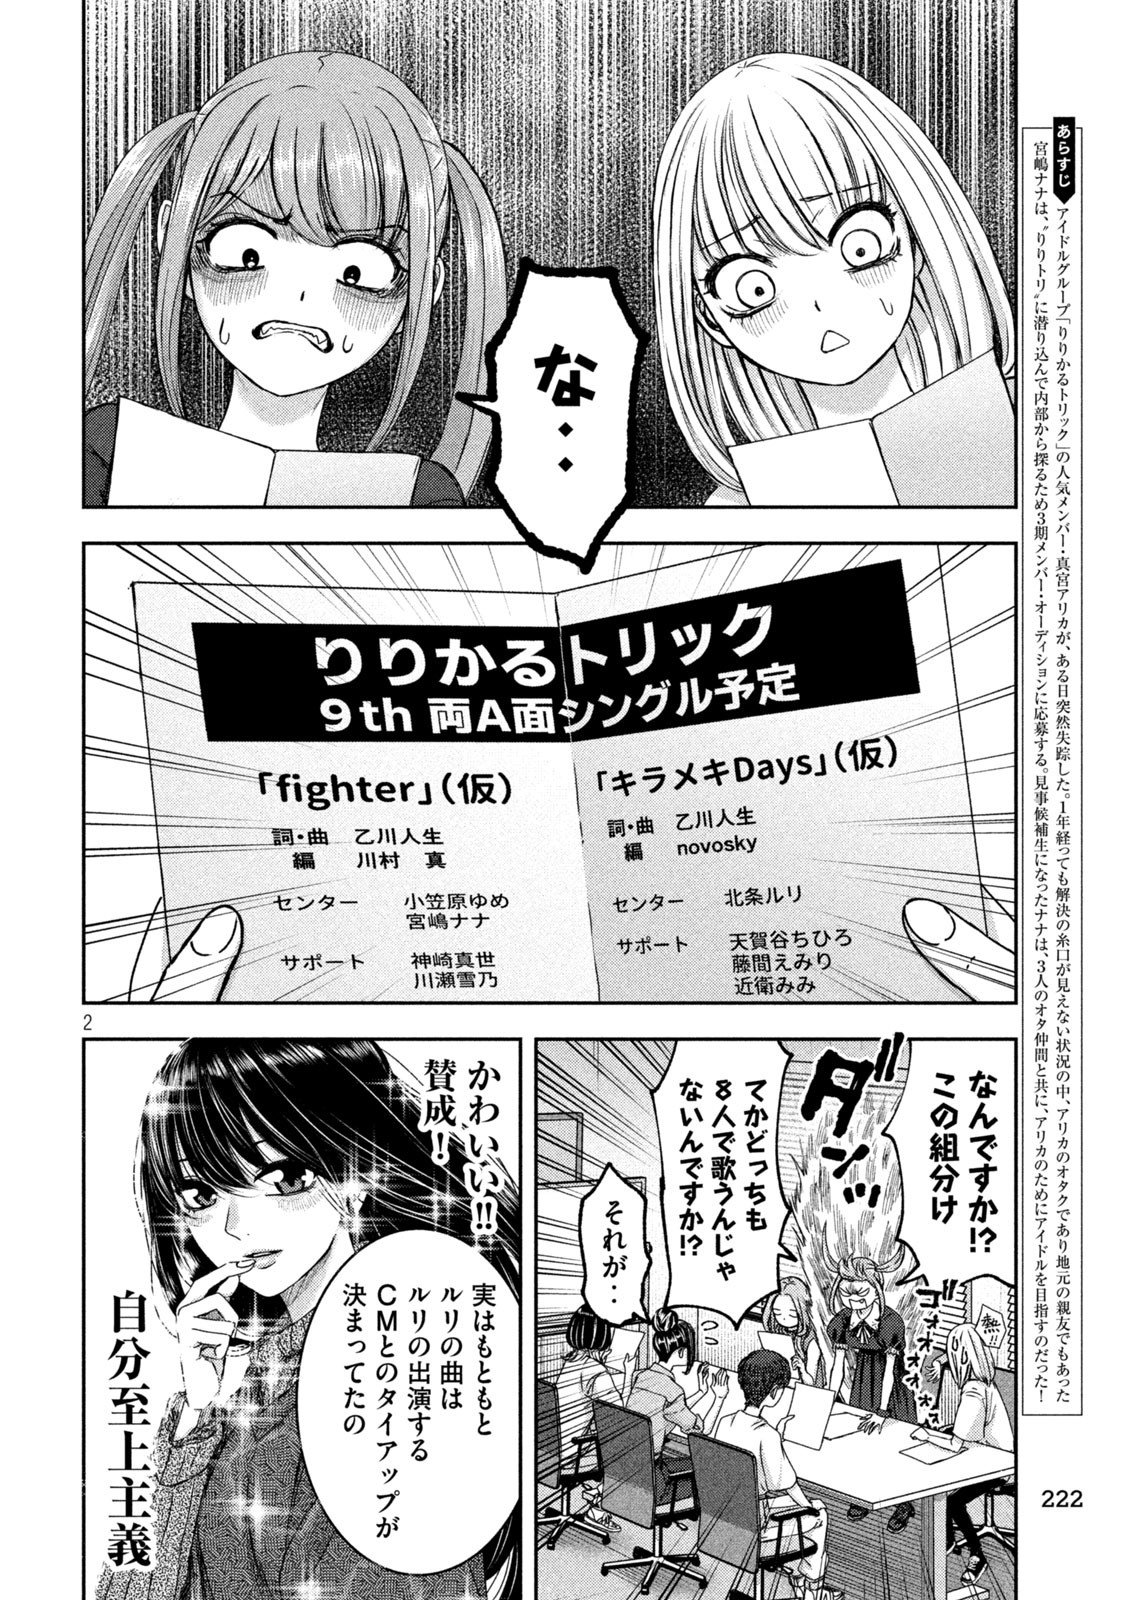 Watashi no Arika - Chapter 38 - Page 2